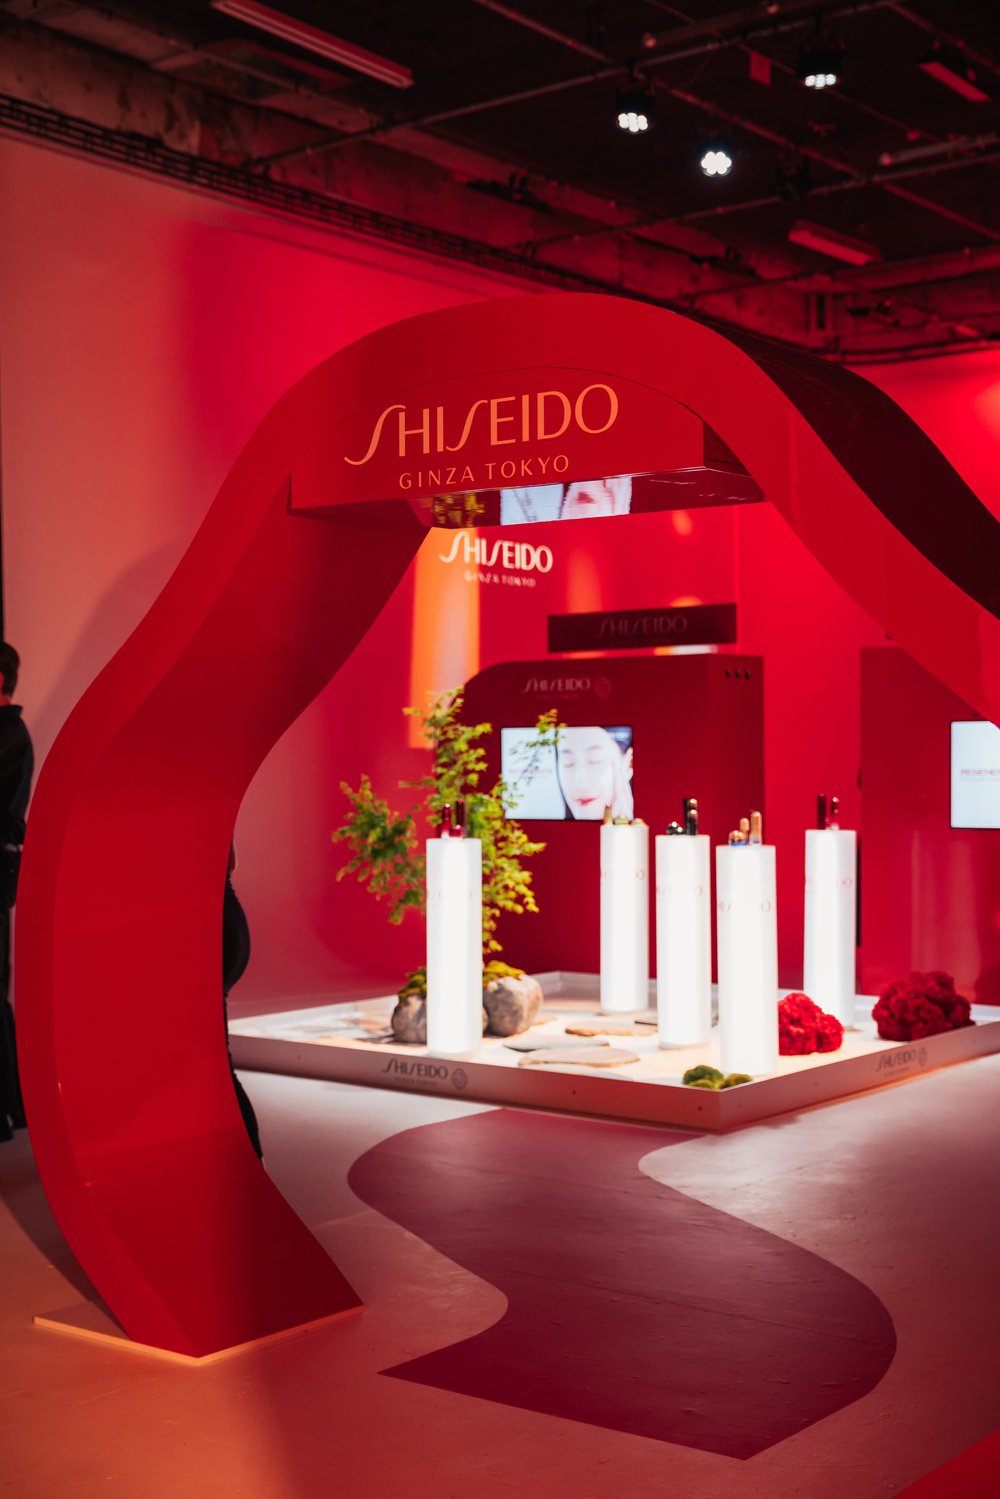 Shiseido-TheBeautyOtaku-23.jpg